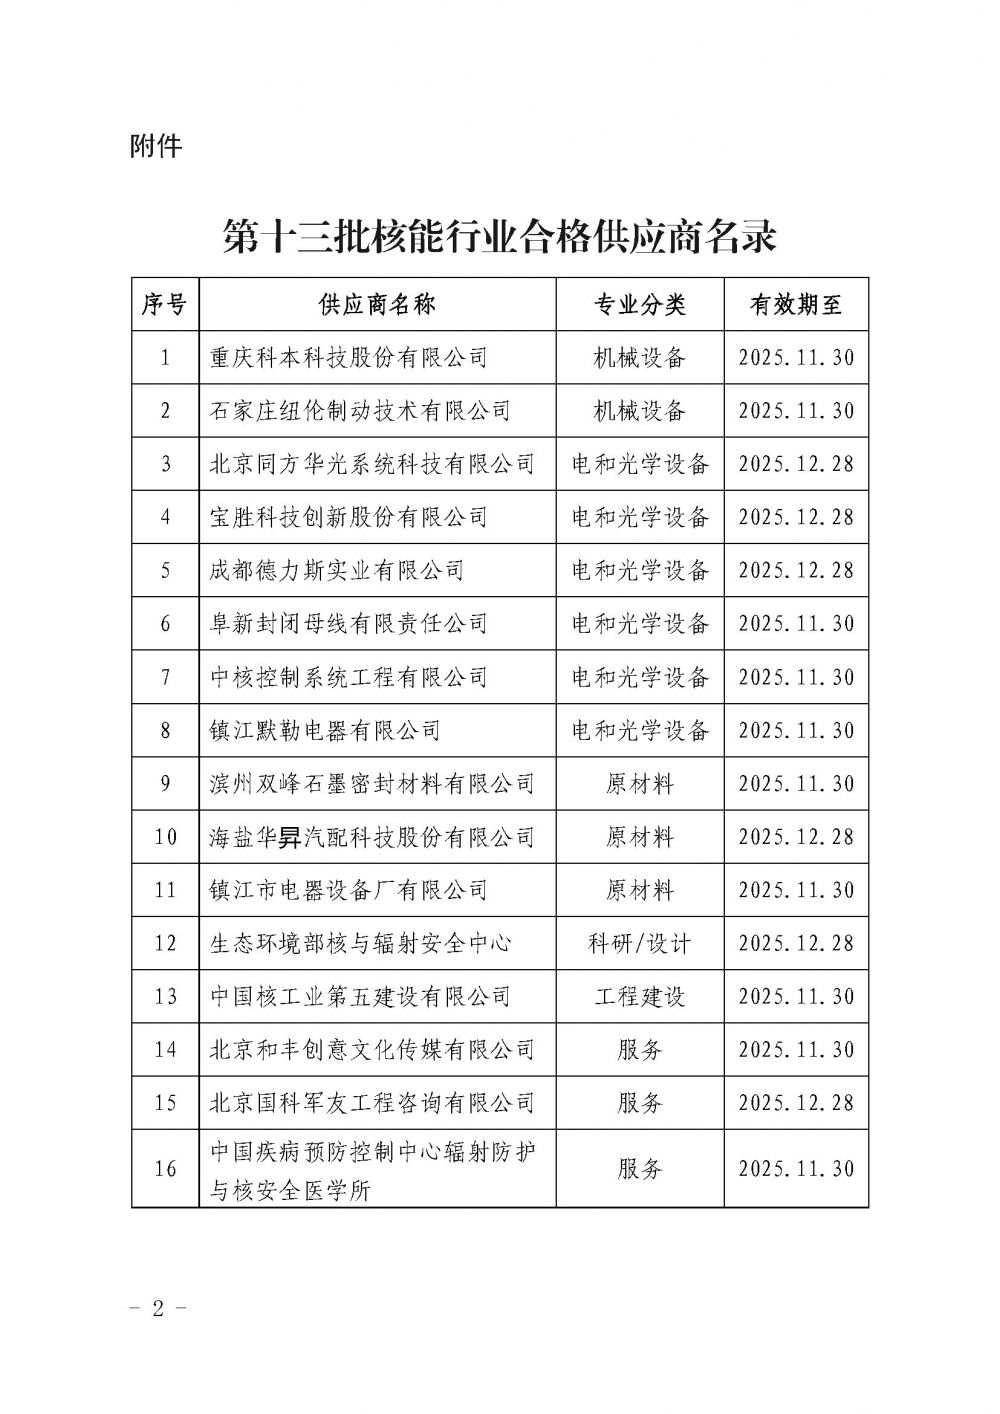 关于发布中国核能行业协会核能行业第十三批合格供应商名录的公告_页面_2.jpg